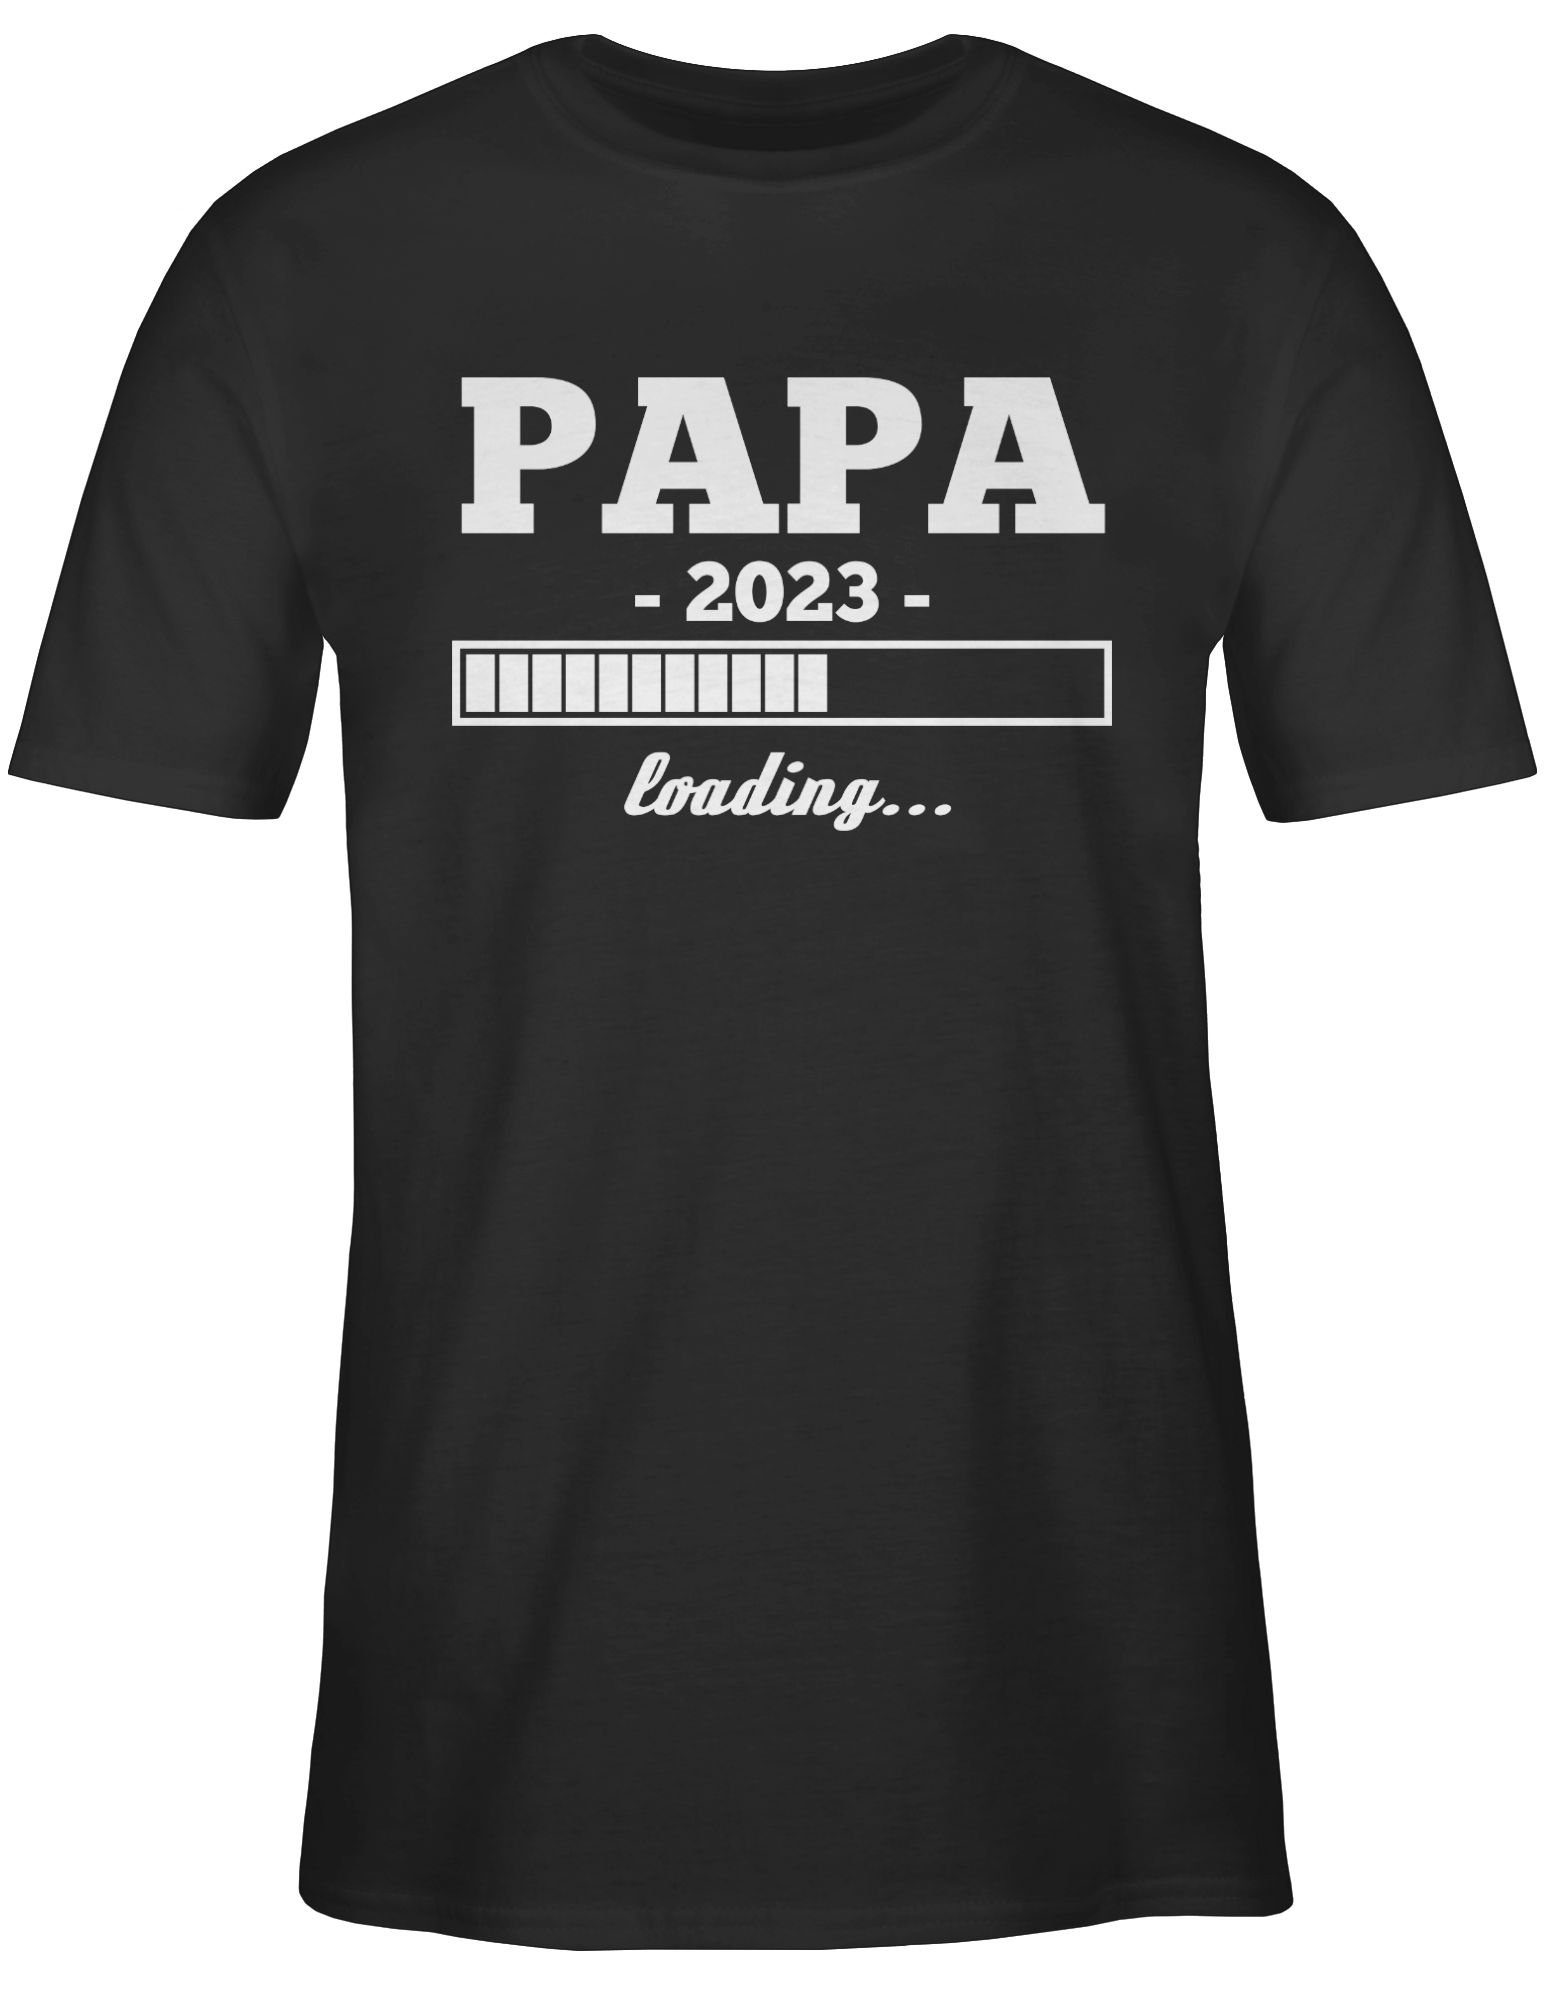 T-Shirt Schwarz 1 loading weiß für Geschenk Papa Papa Shirtracer Vatertag 2023